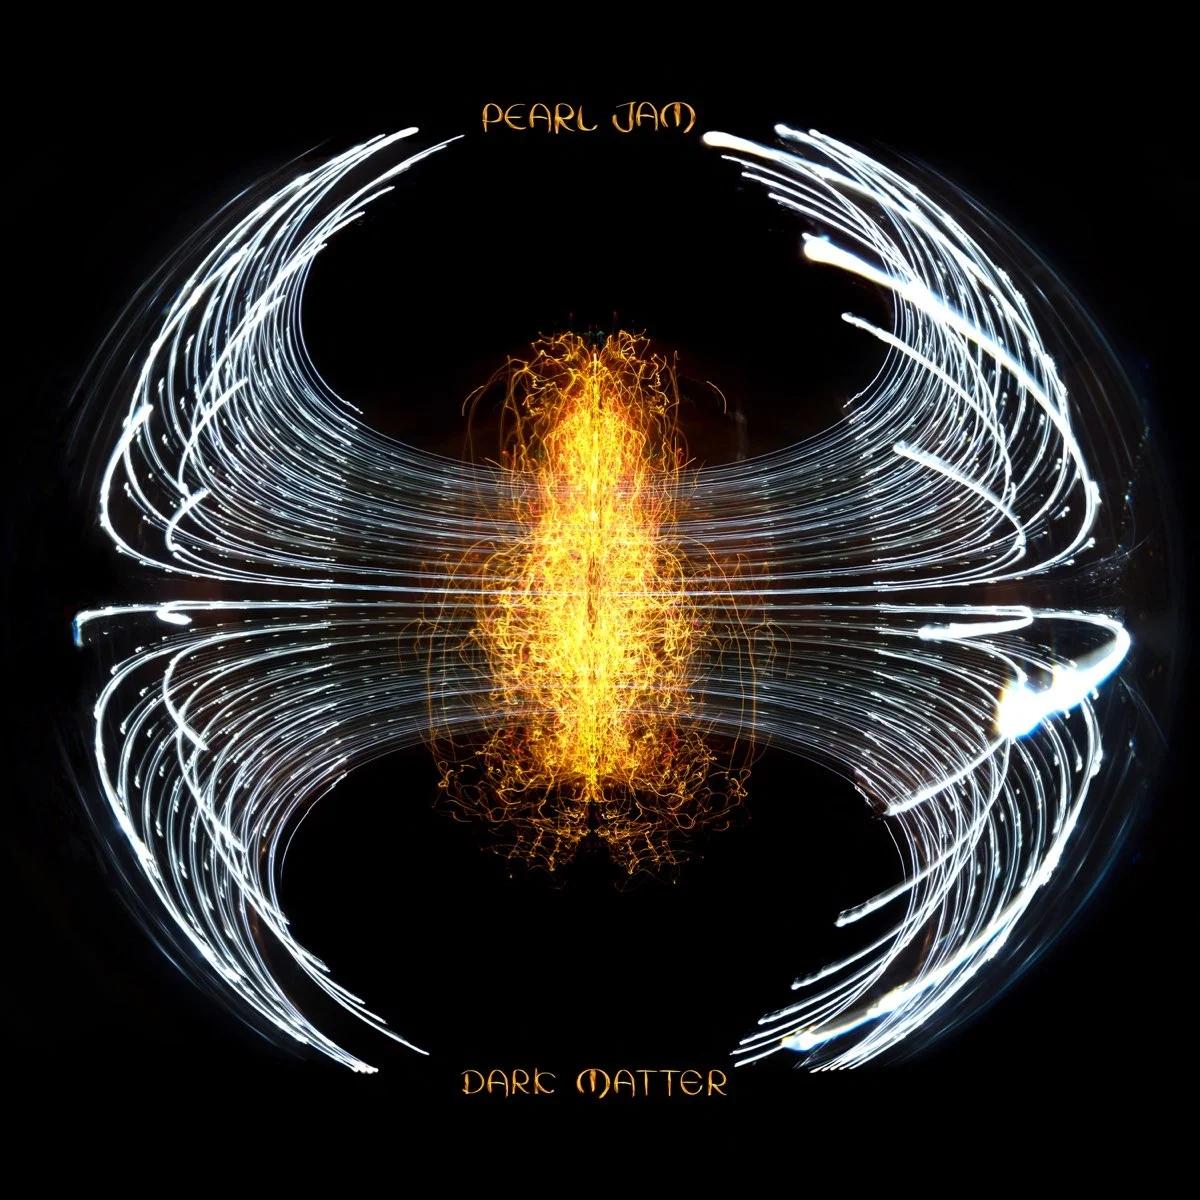 Pearl Jam - Dark Matter - Testo Traduzione Significato